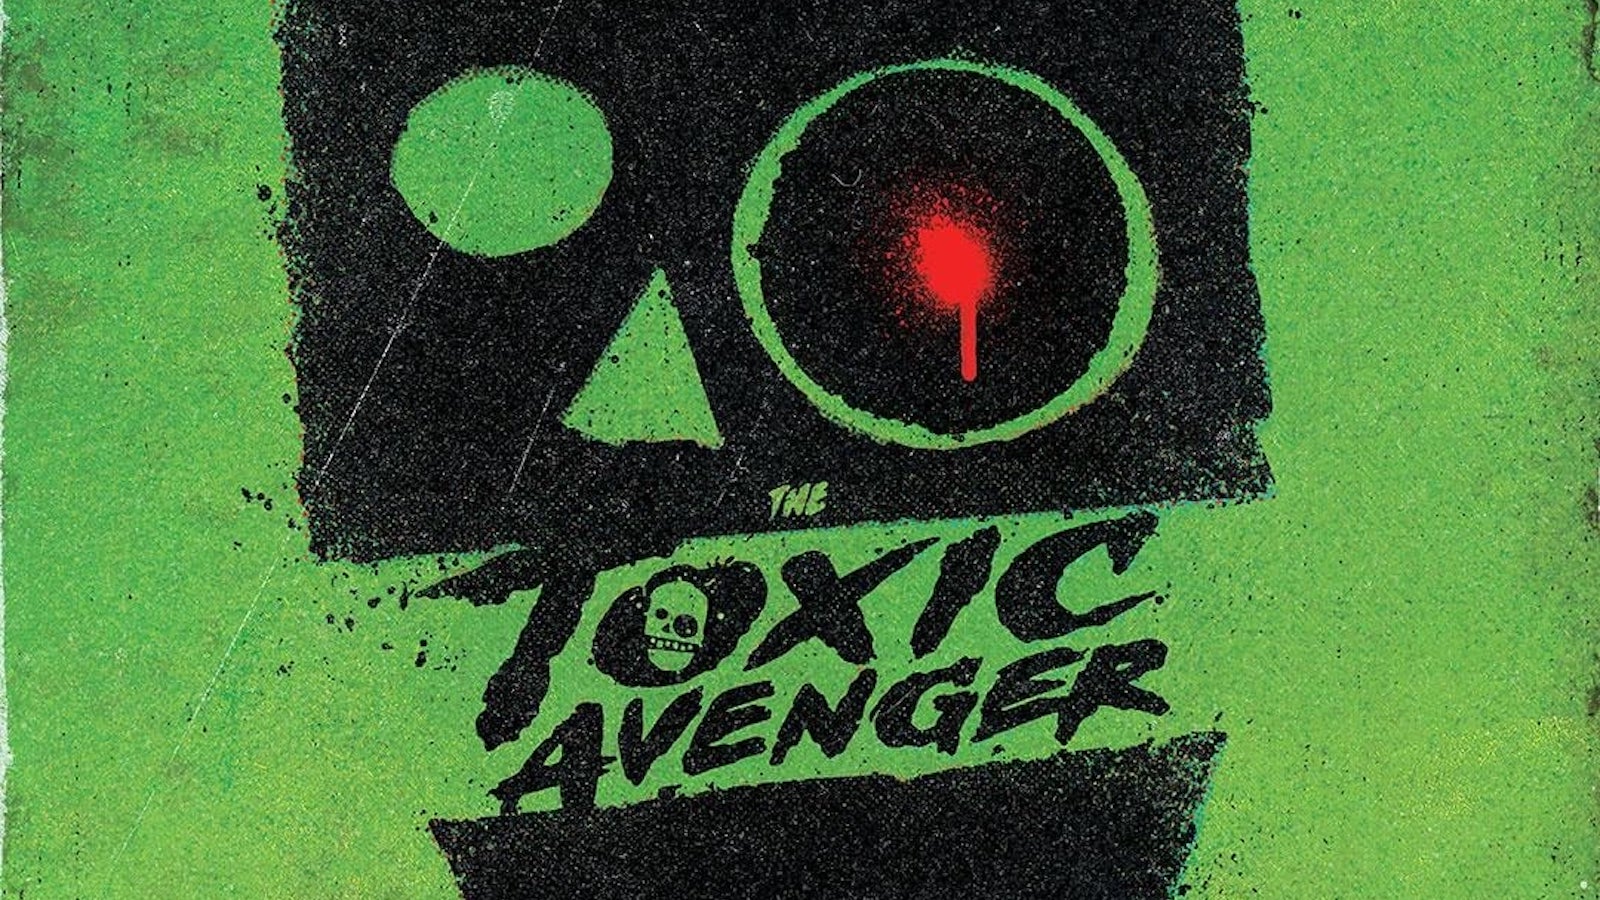 The Toxic Avenger: perché è un film promettente